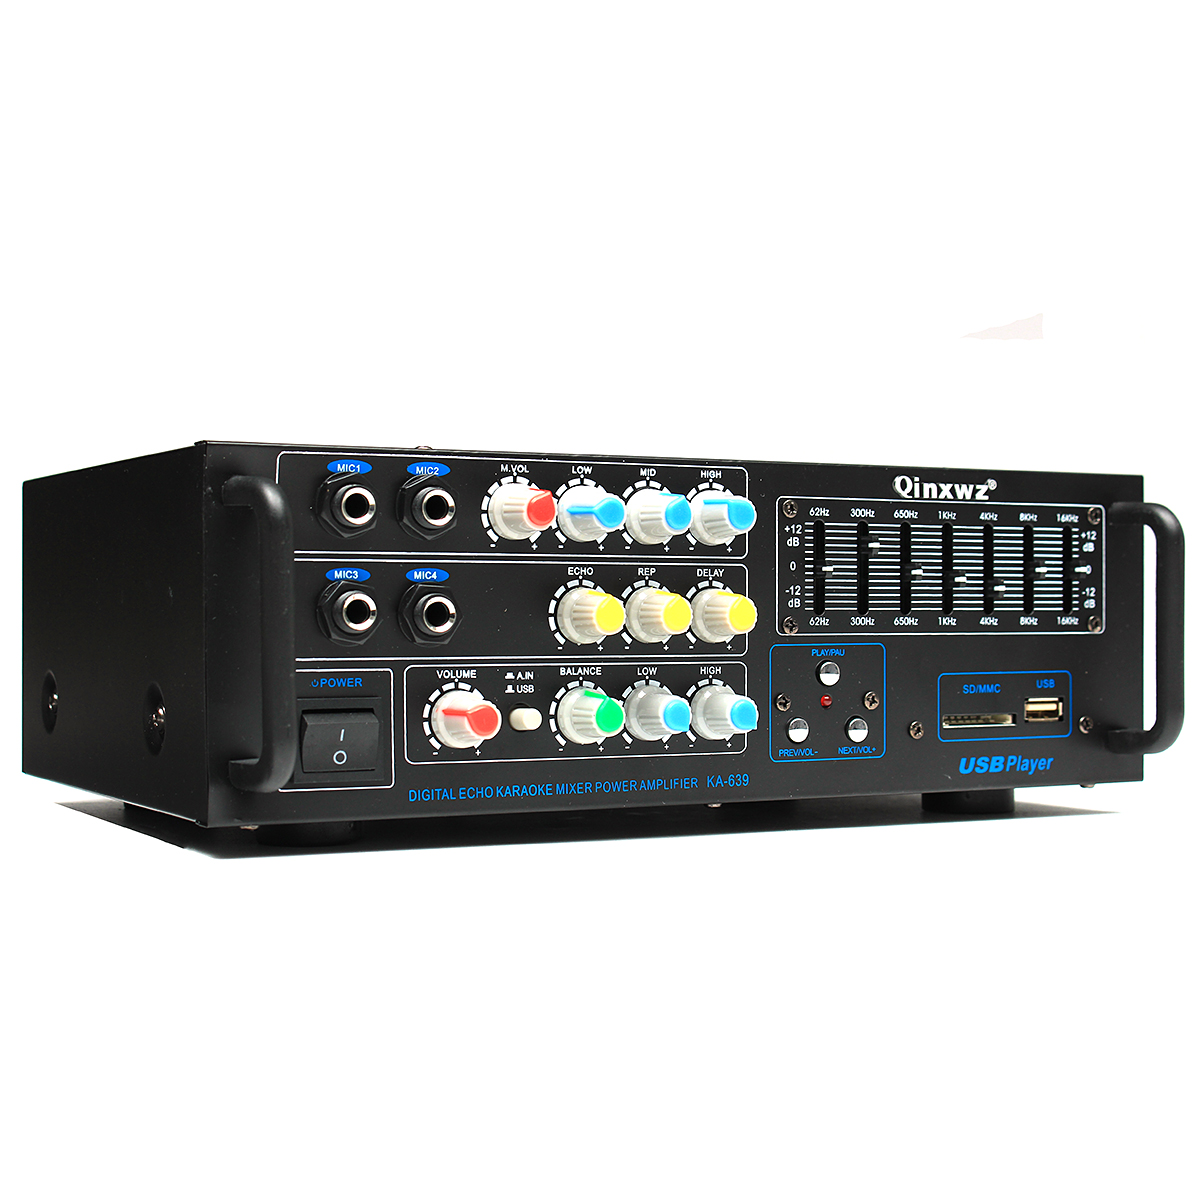 

Qinxwz KA-639 Профессиональная домашняя аудиосистема 1200 Вт стерео Power Усилитель Поддержка USB SD-карты